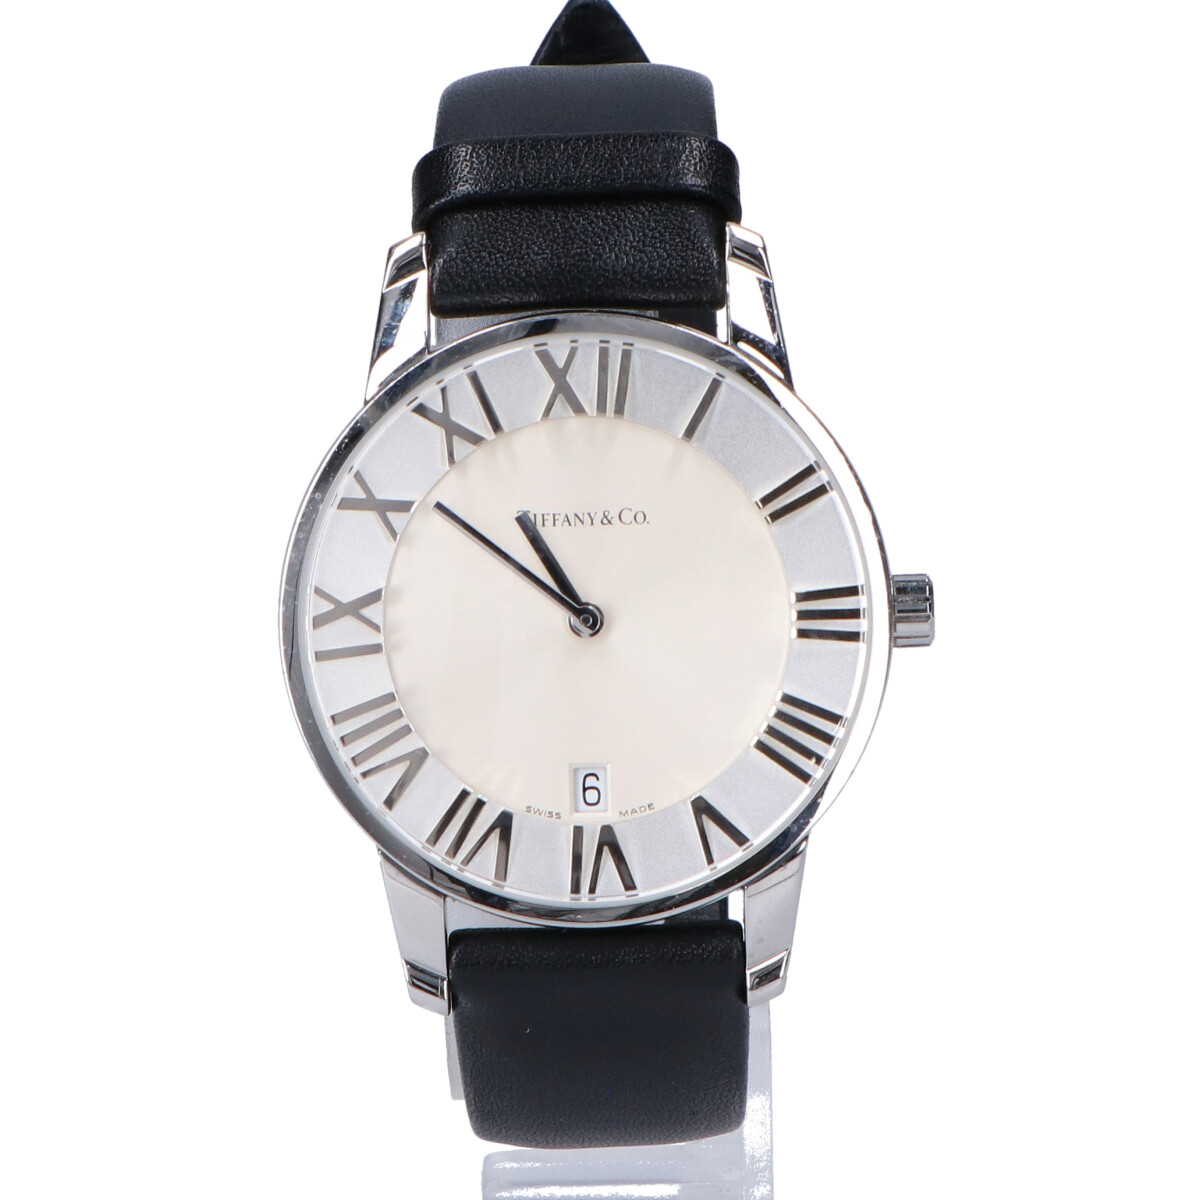 ティファニーのATLAS DOME クオーツ 革ベルト 腕時計の買取実績です。